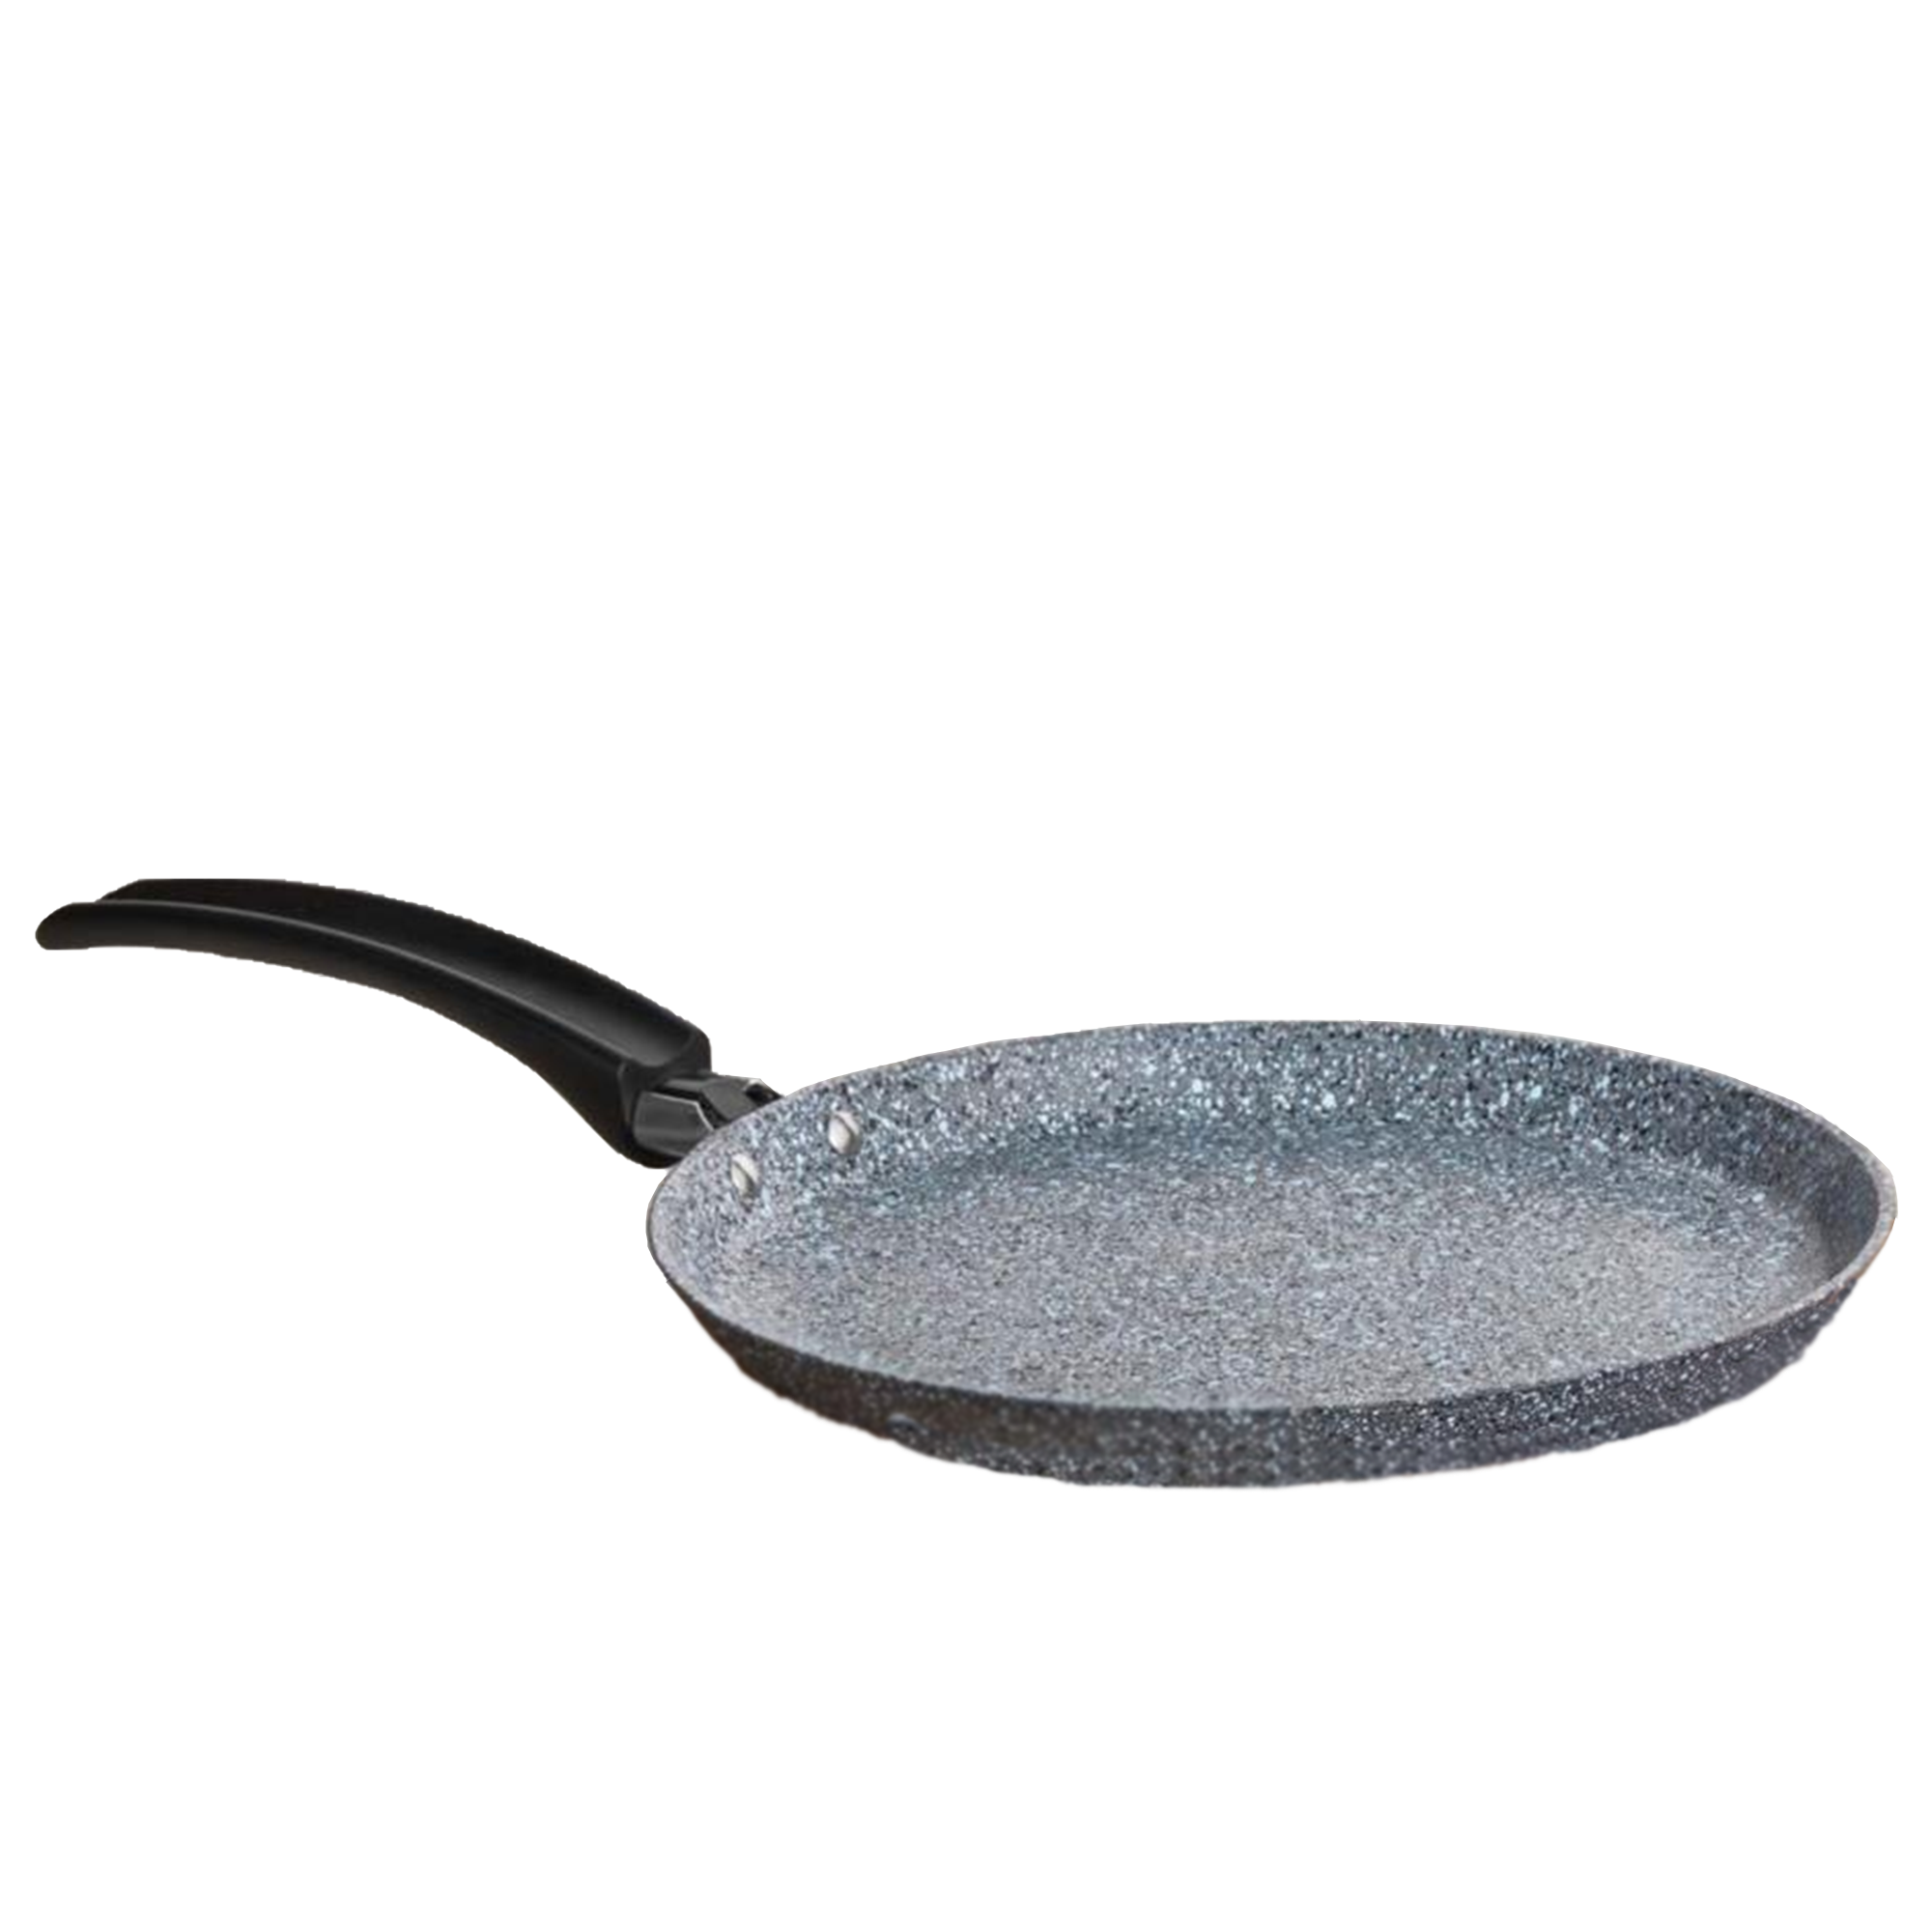 Falez Pedra Crepe Pan, 24 cm
                Falez Pedra Crepe Pan, 24 cm